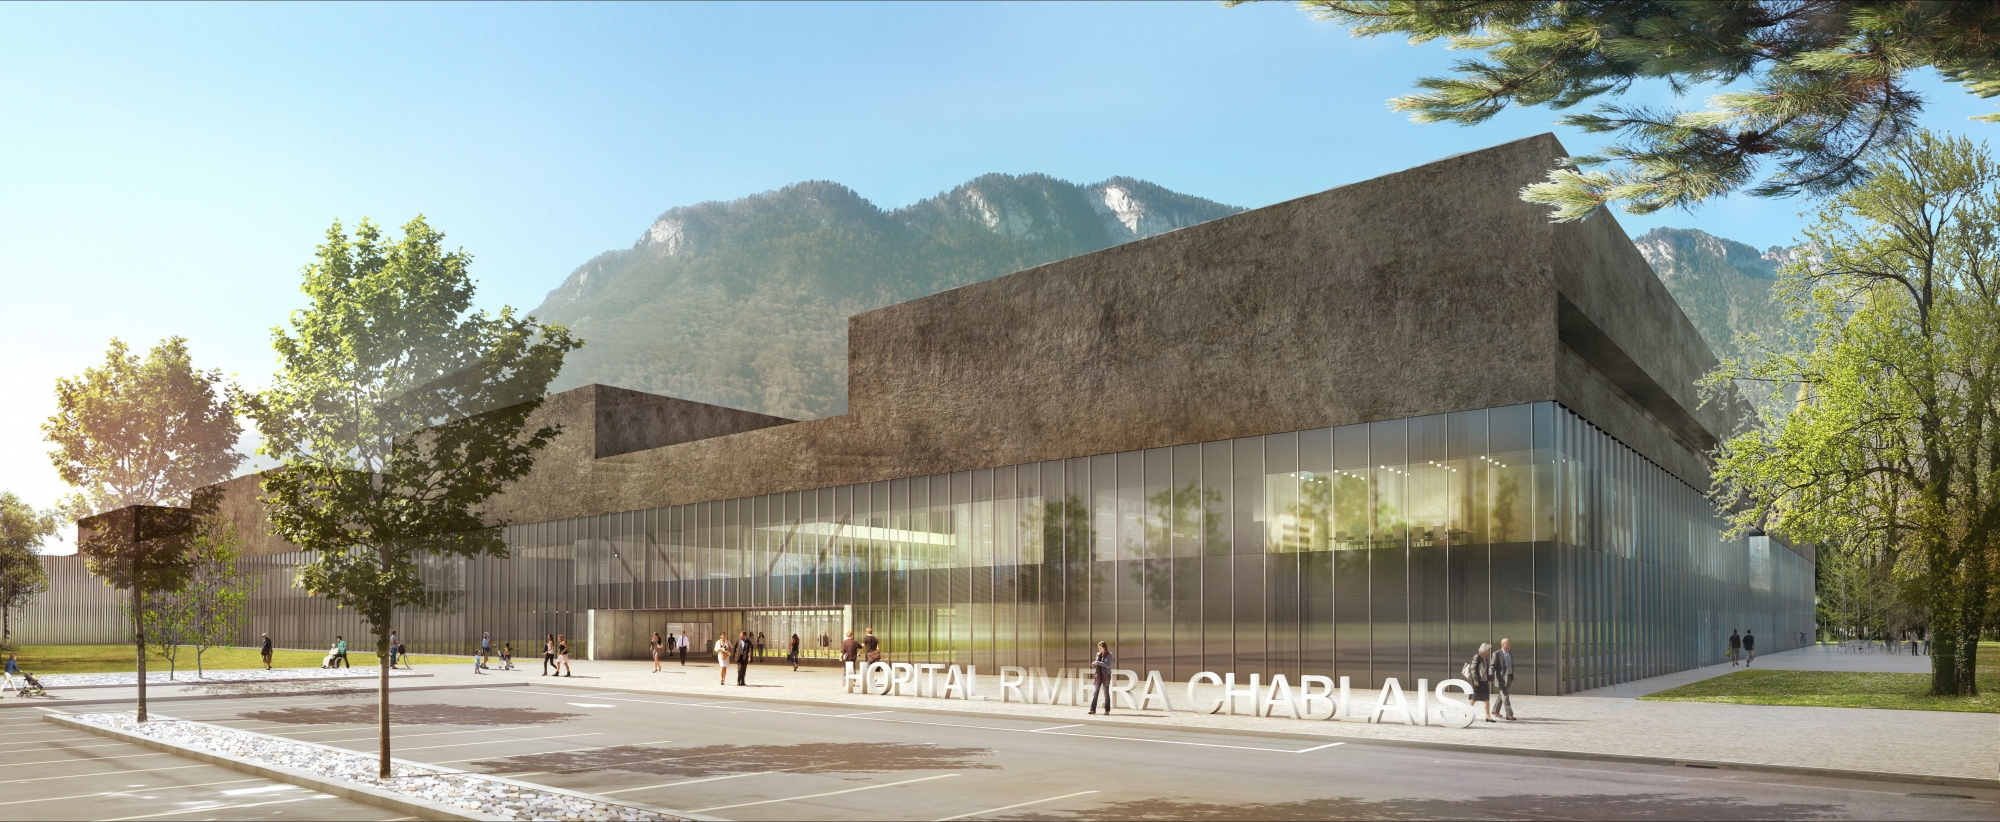 Vue de synthèse de l'entrée du futur Hôpital Riviera-Chablais en train de sortir de terre à Rennaz. ldd